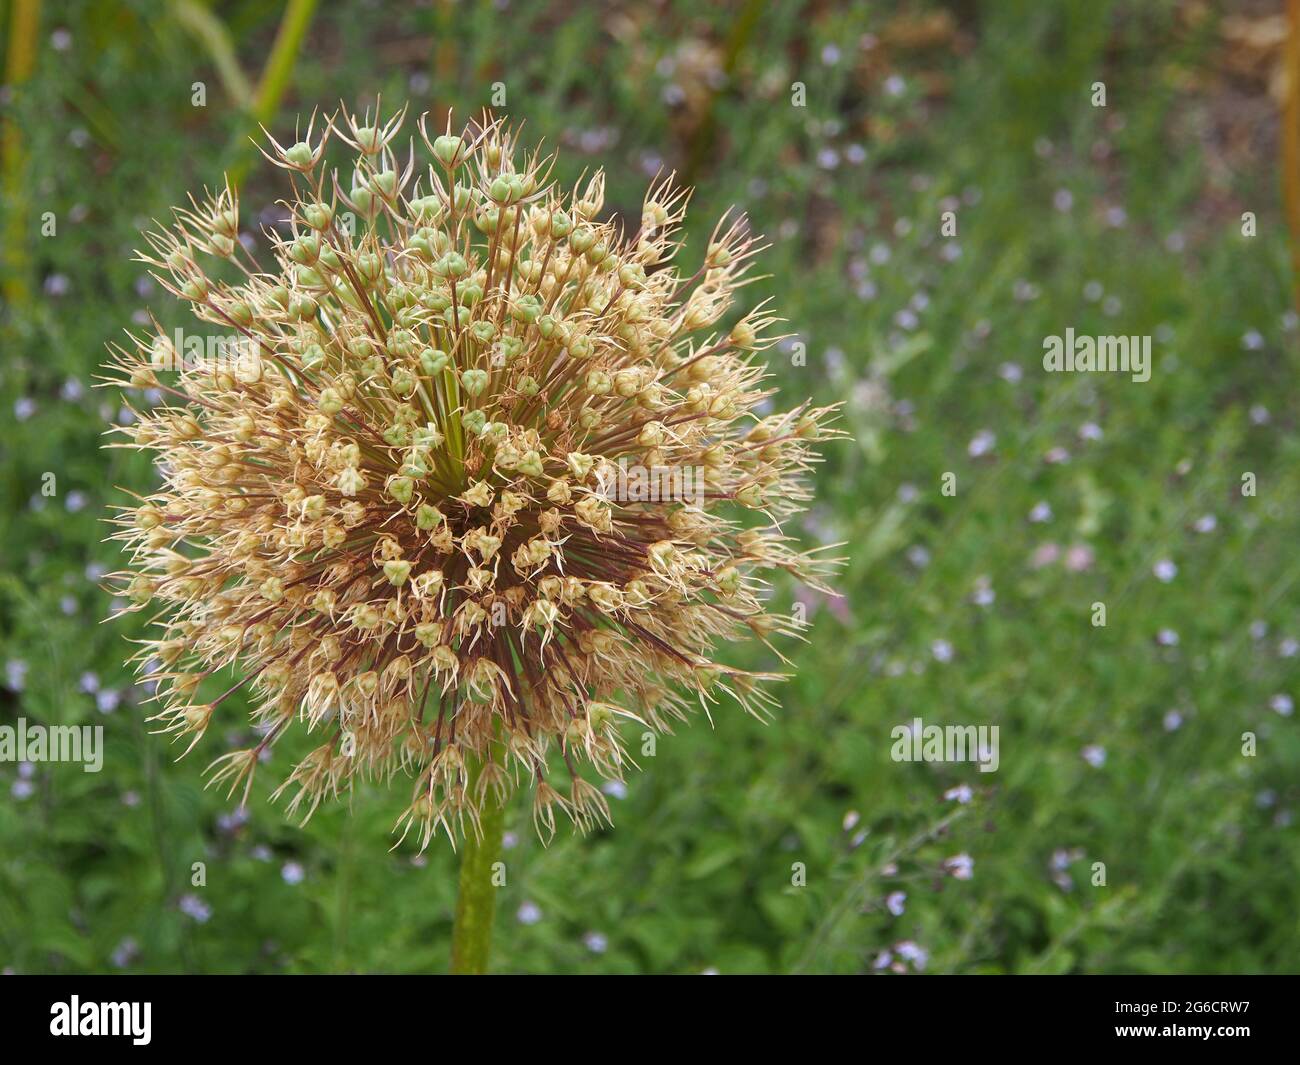 Makroaufnahme des Saatkopfes des riesigen Allium (Allium giganteum) Var. Allium Beau betrachtet das Wachstum in einem englischen Garten im Juli. Stockfoto